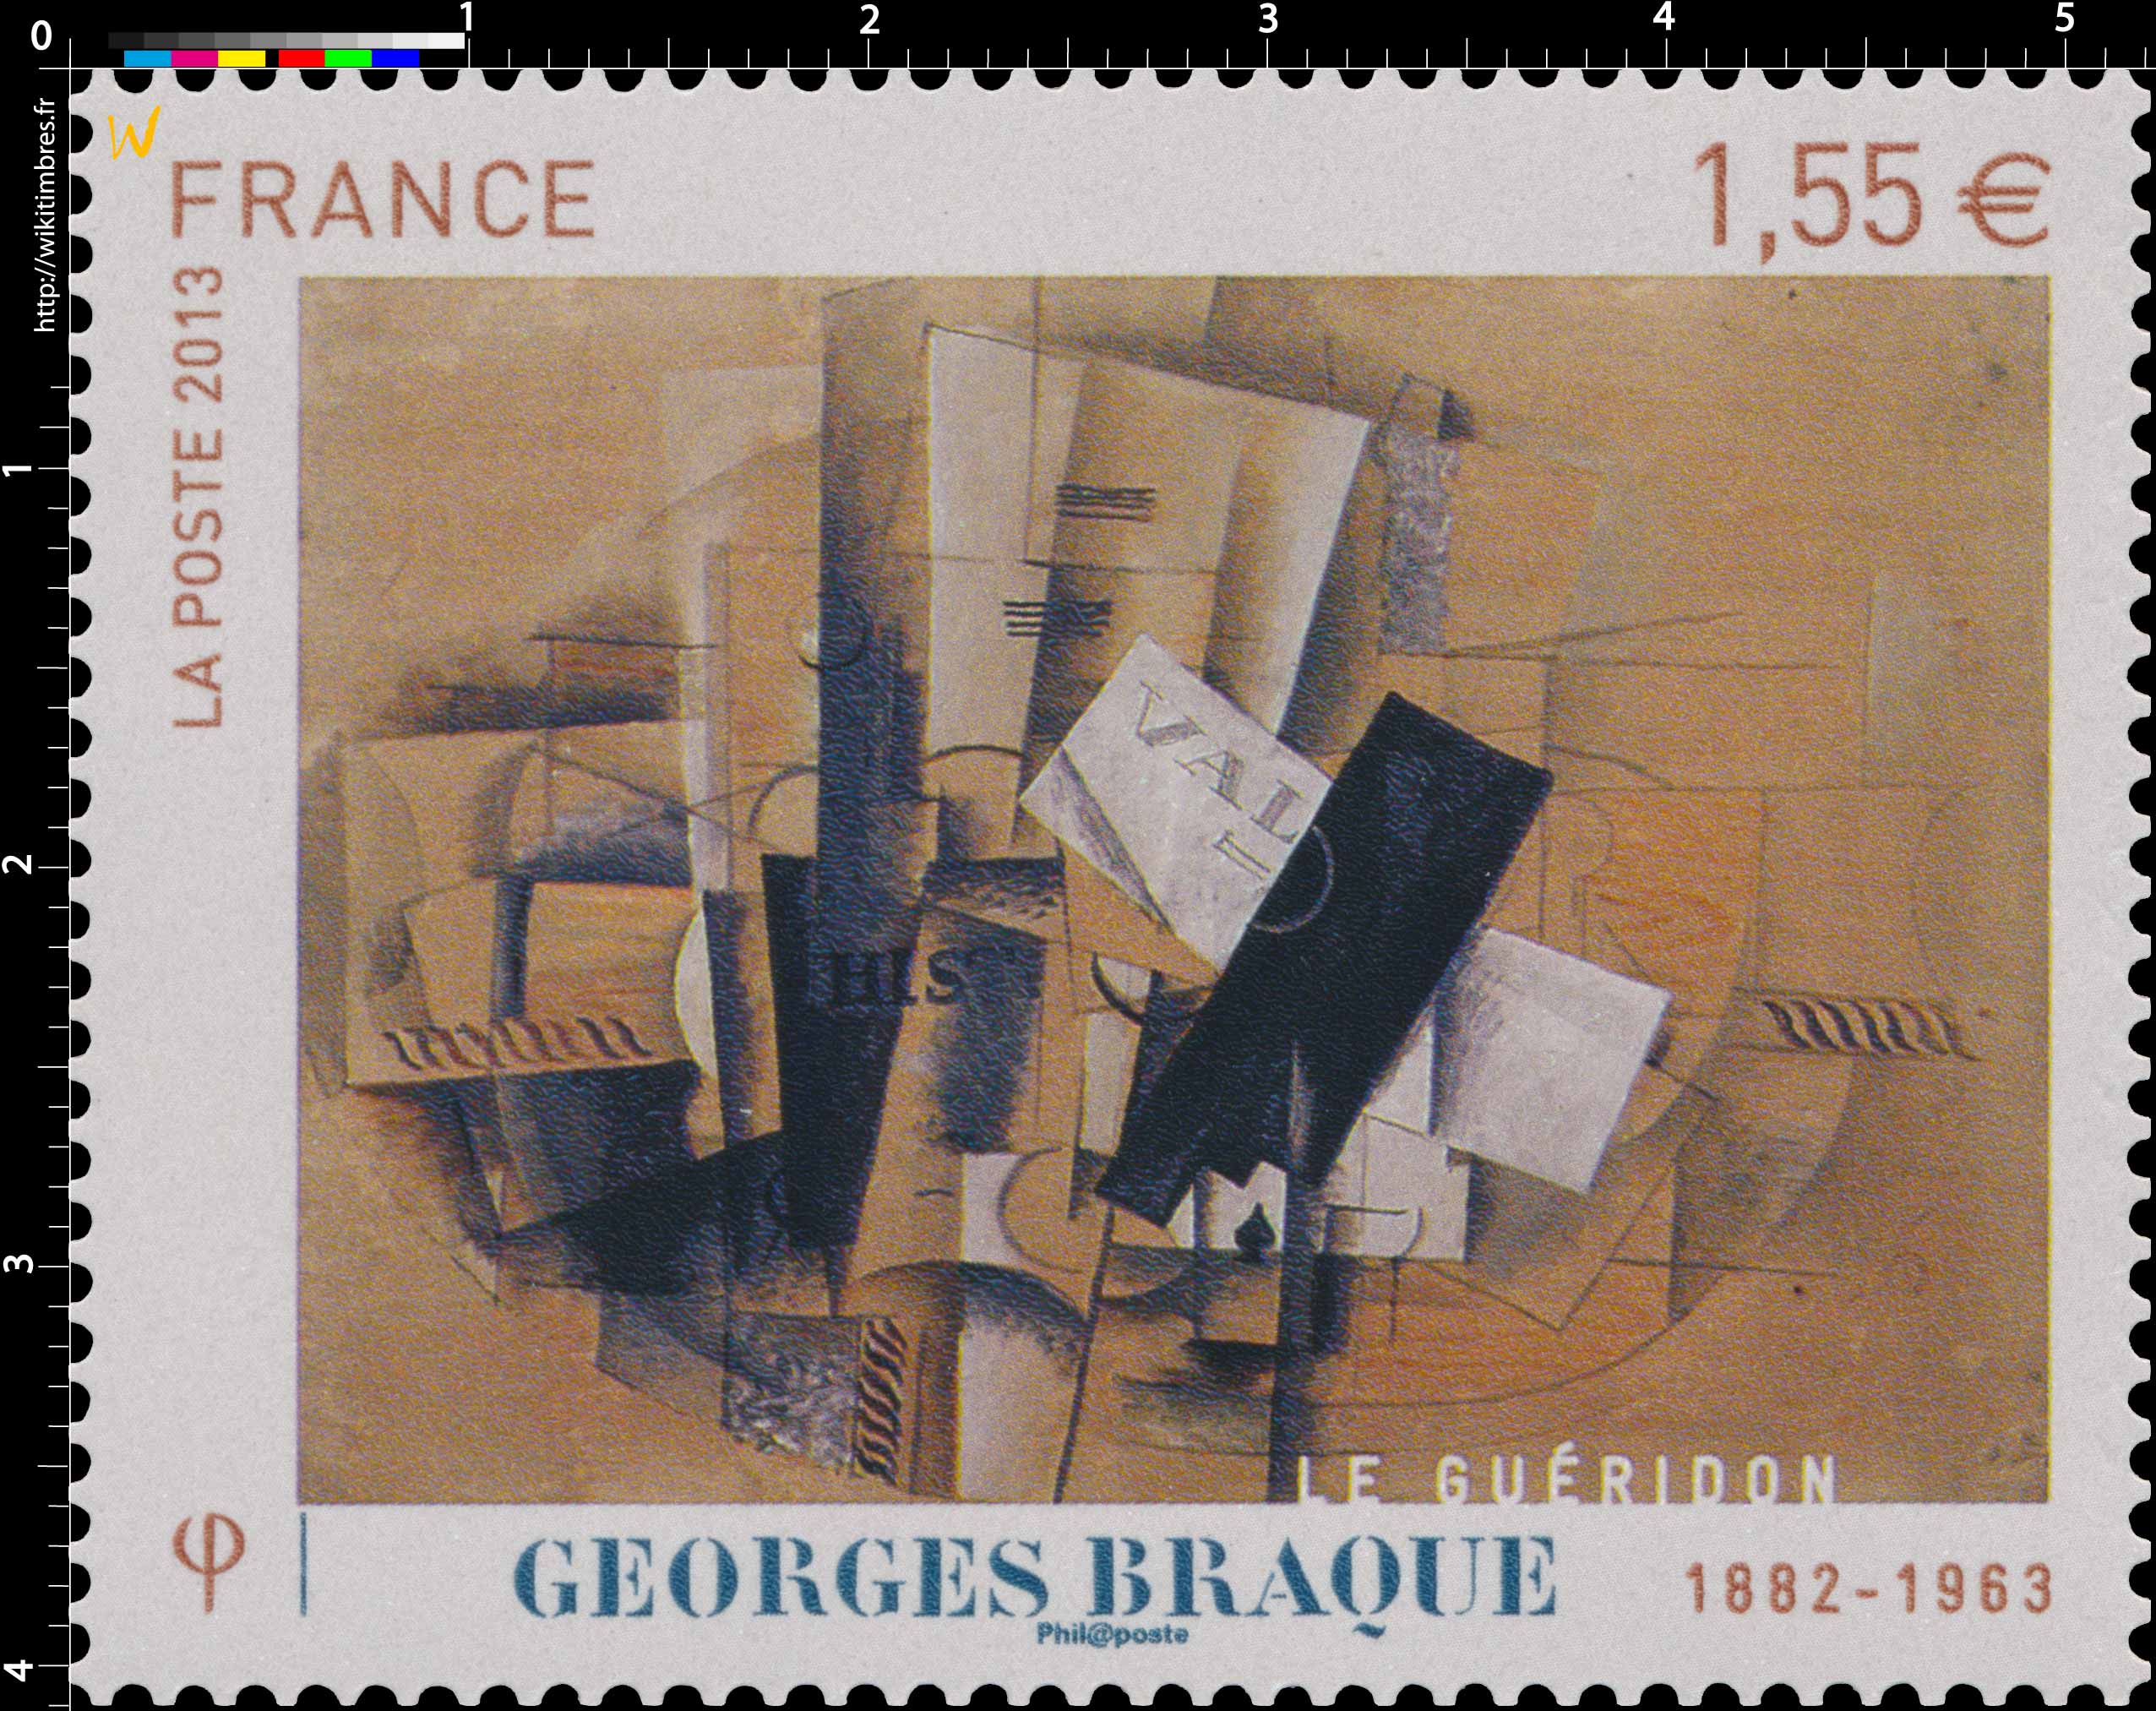 Georges Braque 1882 - 1963 